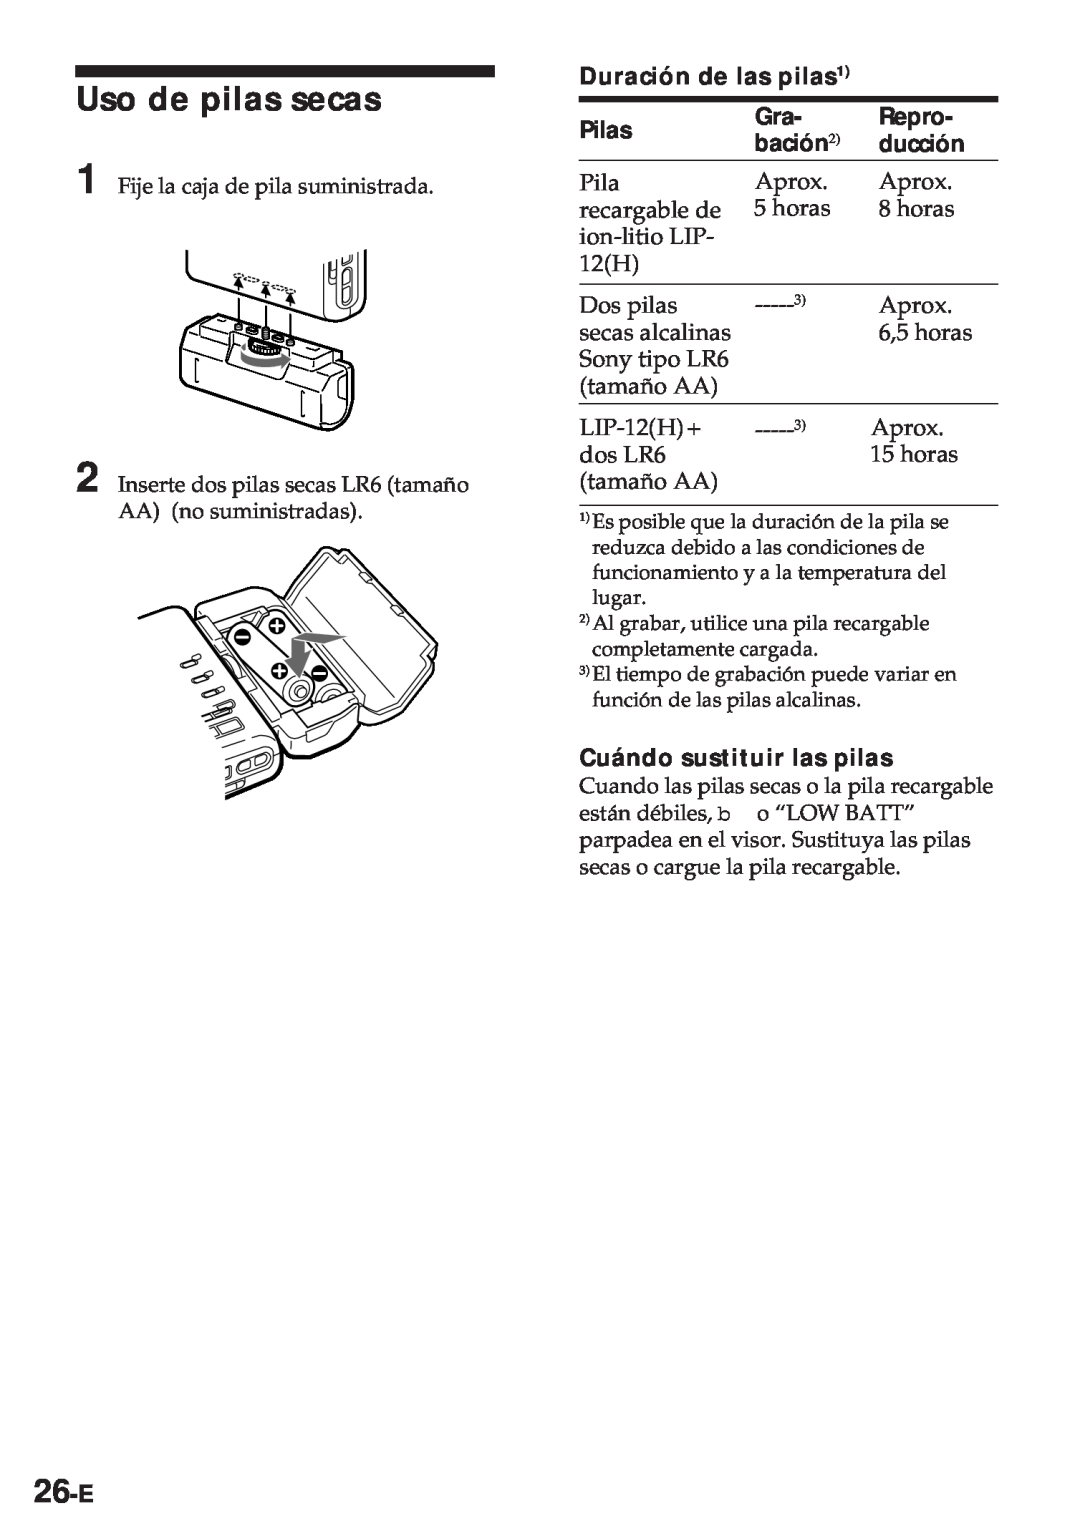 Sony MZ-R30 Uso de pilas secas, 26-E, Duración de las pilas1, Pilas, Repro, bación2, ducción, Cuándo sustituir las pilas 